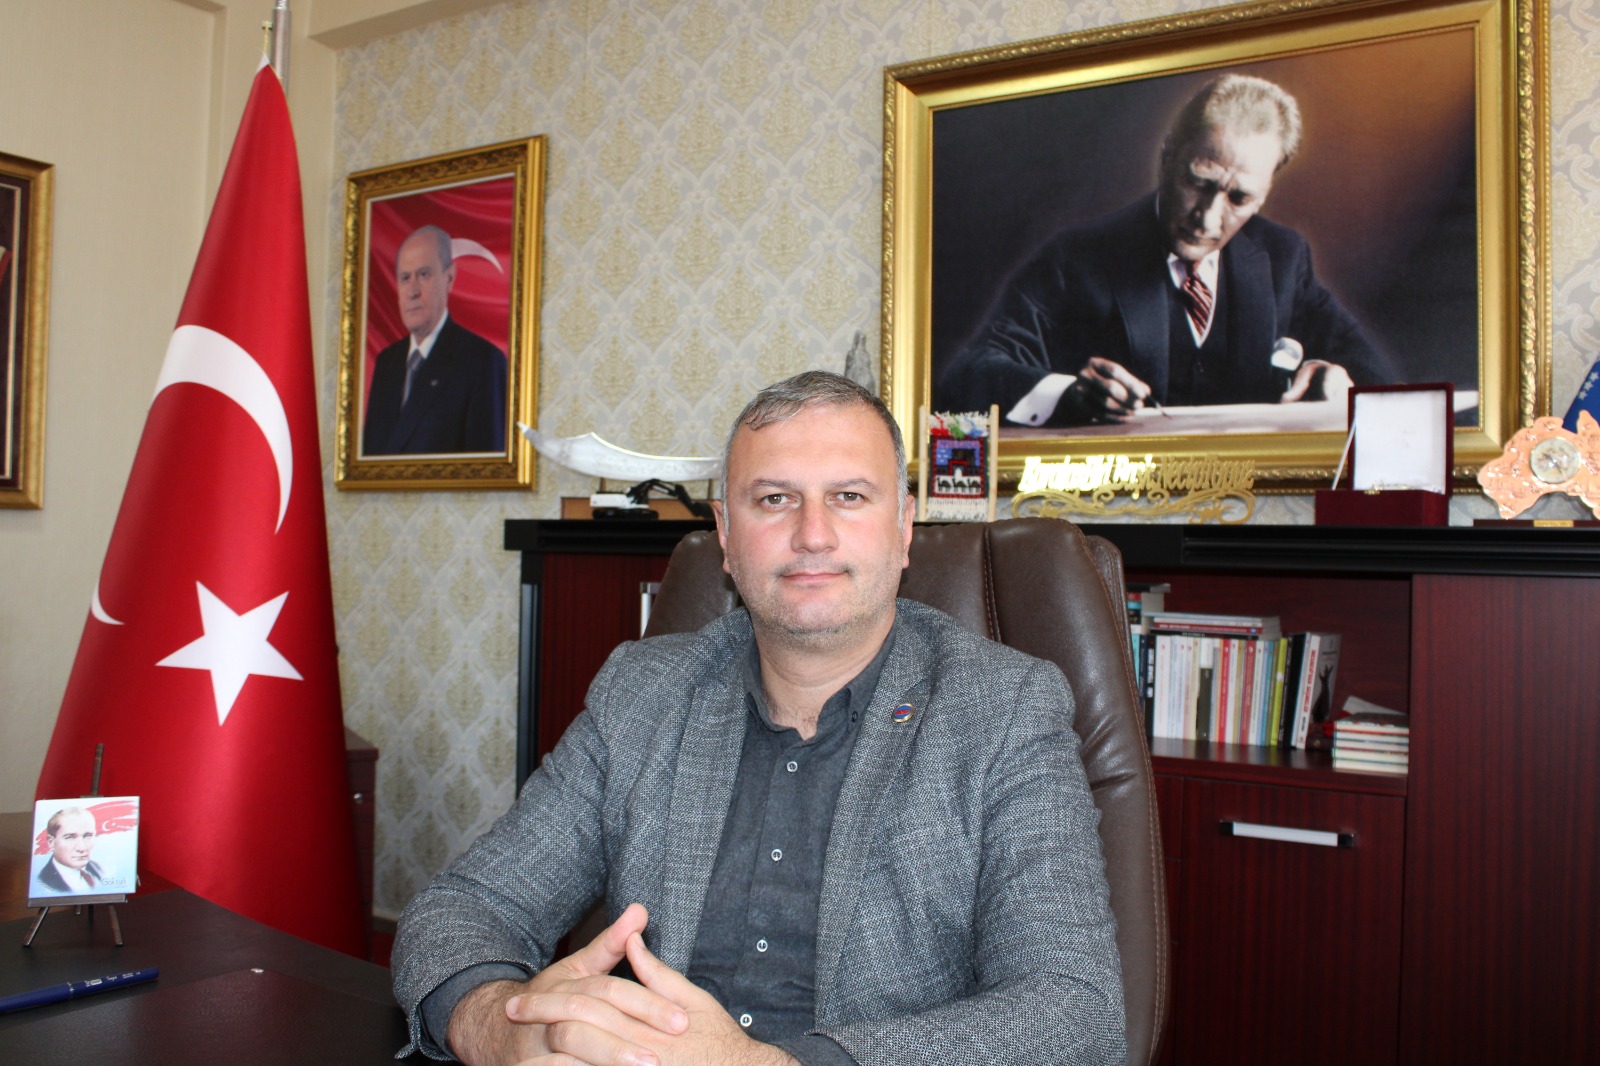 Karataş Belediye Başkanı Necip Topuz Babalar Günü vesilesi ile bir mesaj yayımladı. 